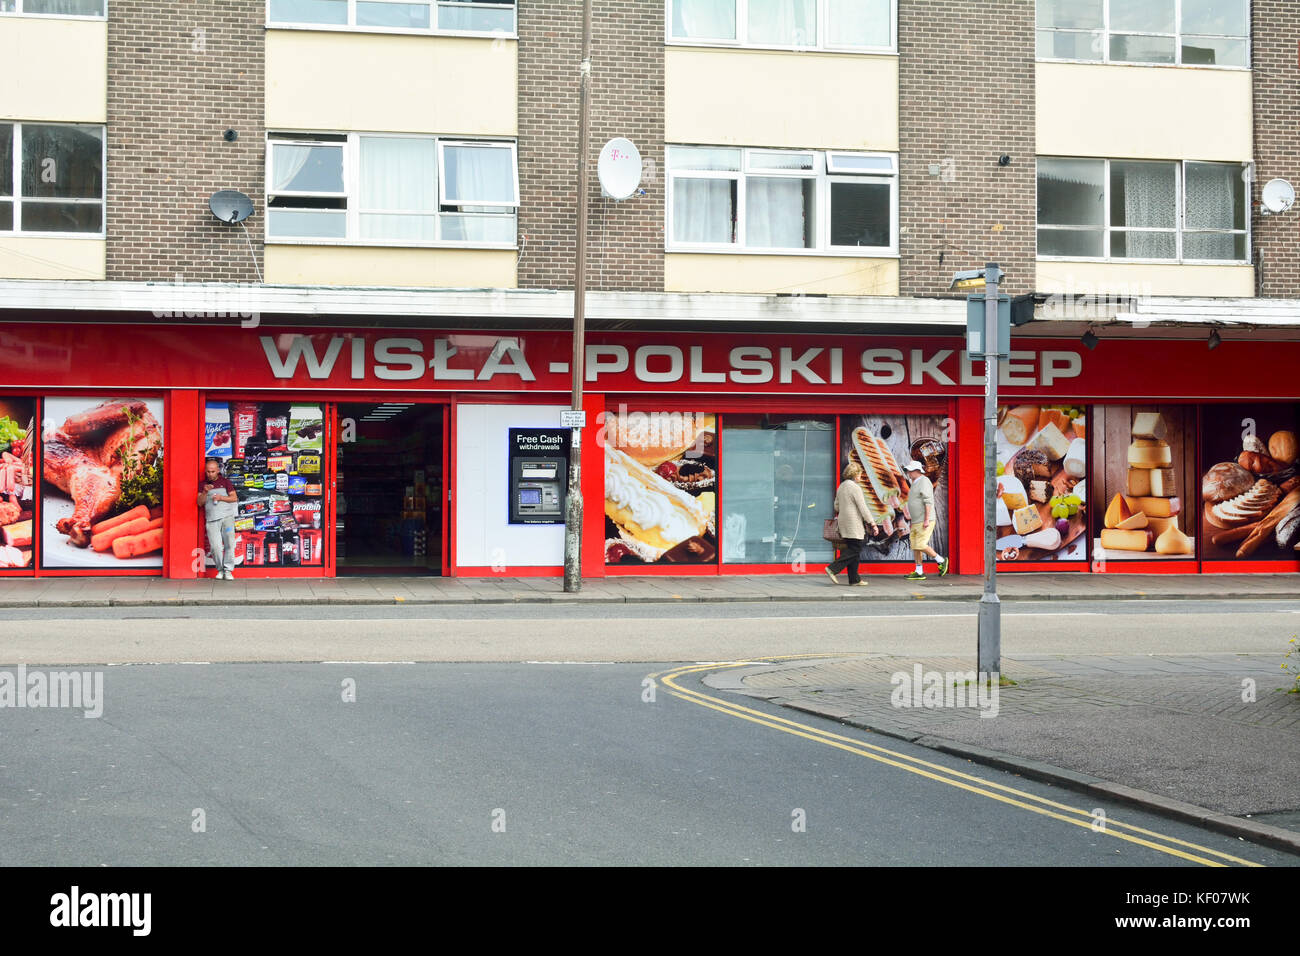 Polish supermarket Wilsa-Polski Skdep - in Bedford town centre in England Stock Photo